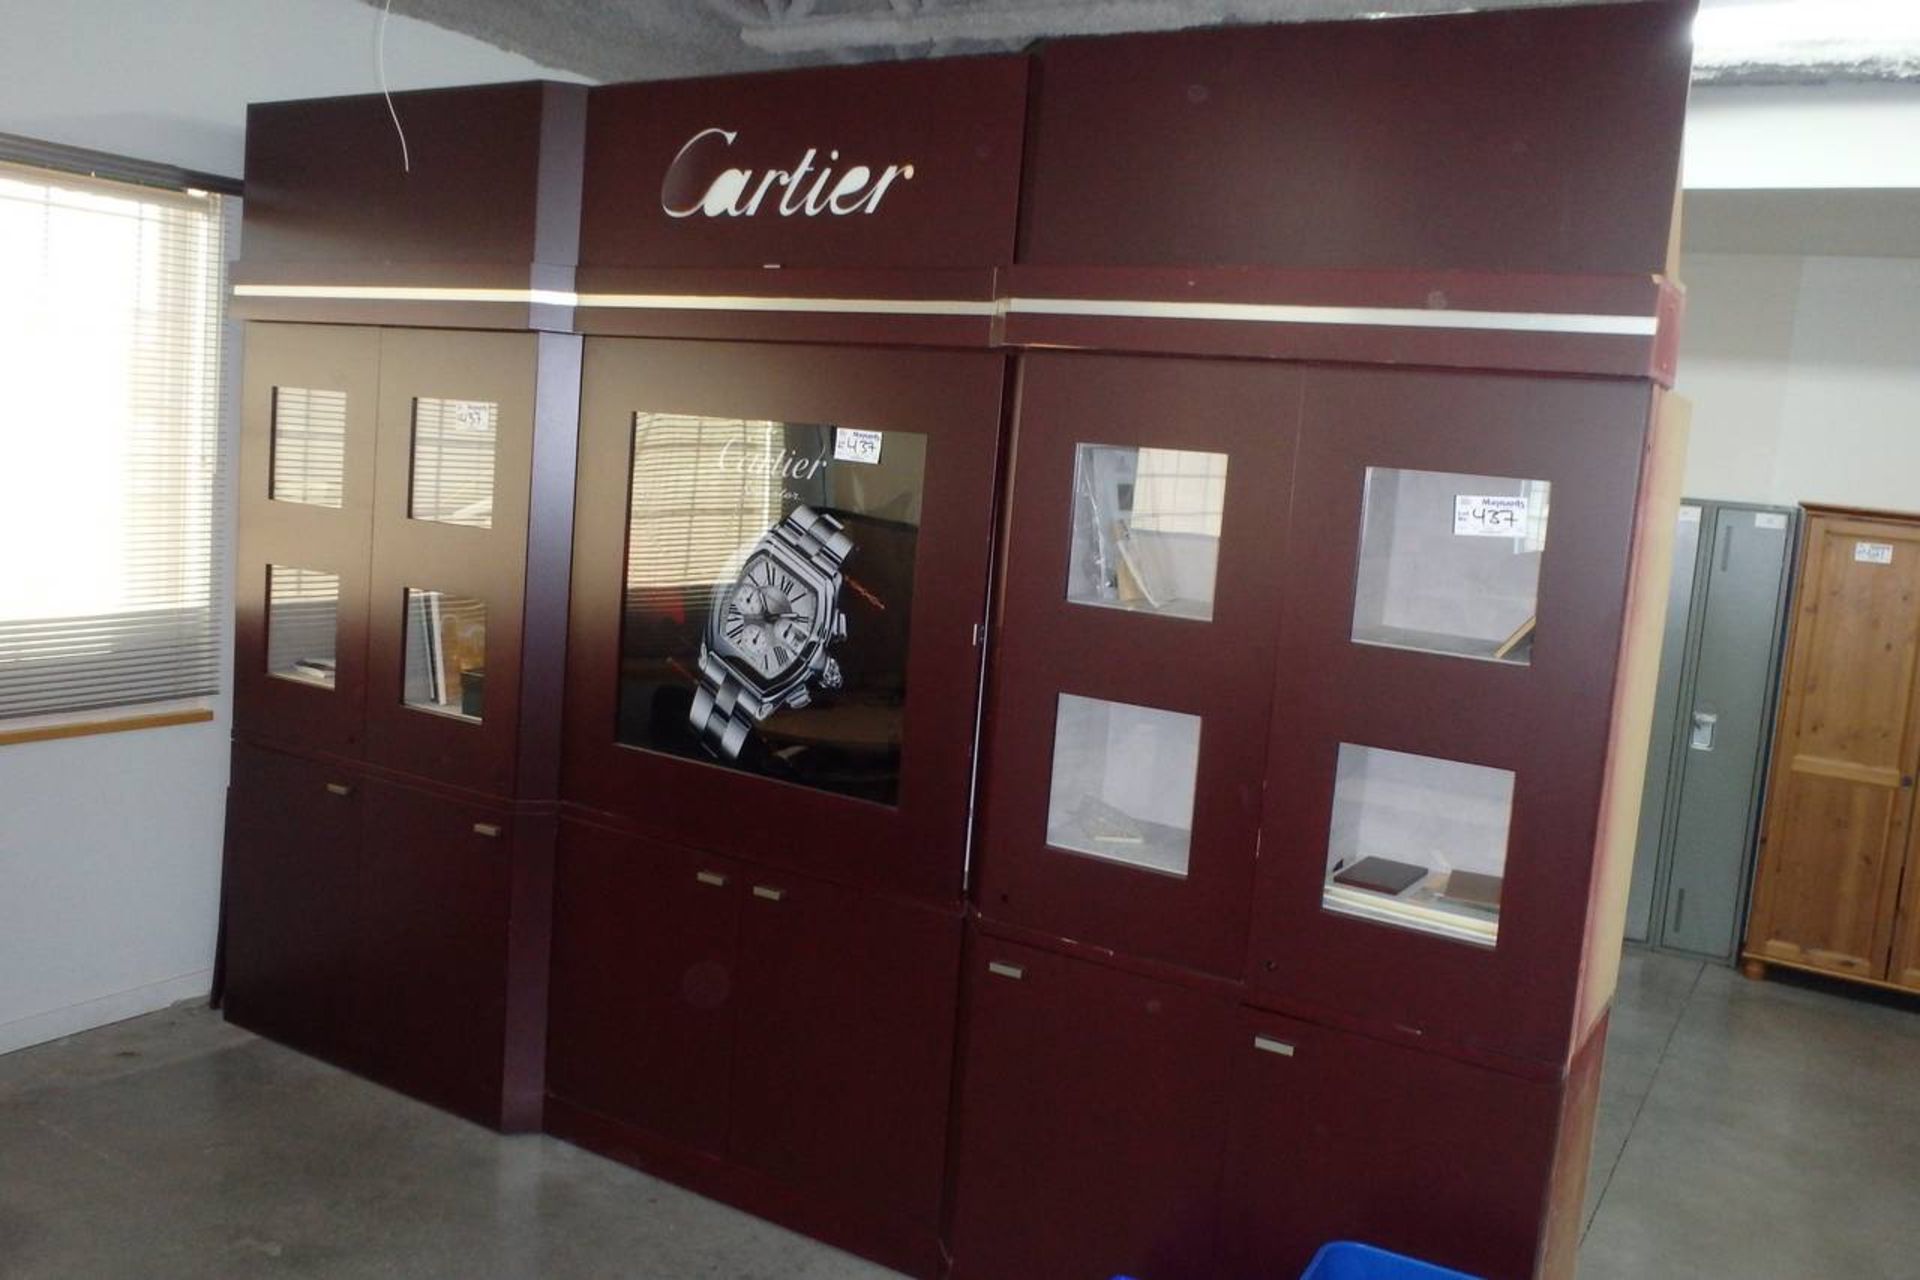 Cartier' Display Cabinet